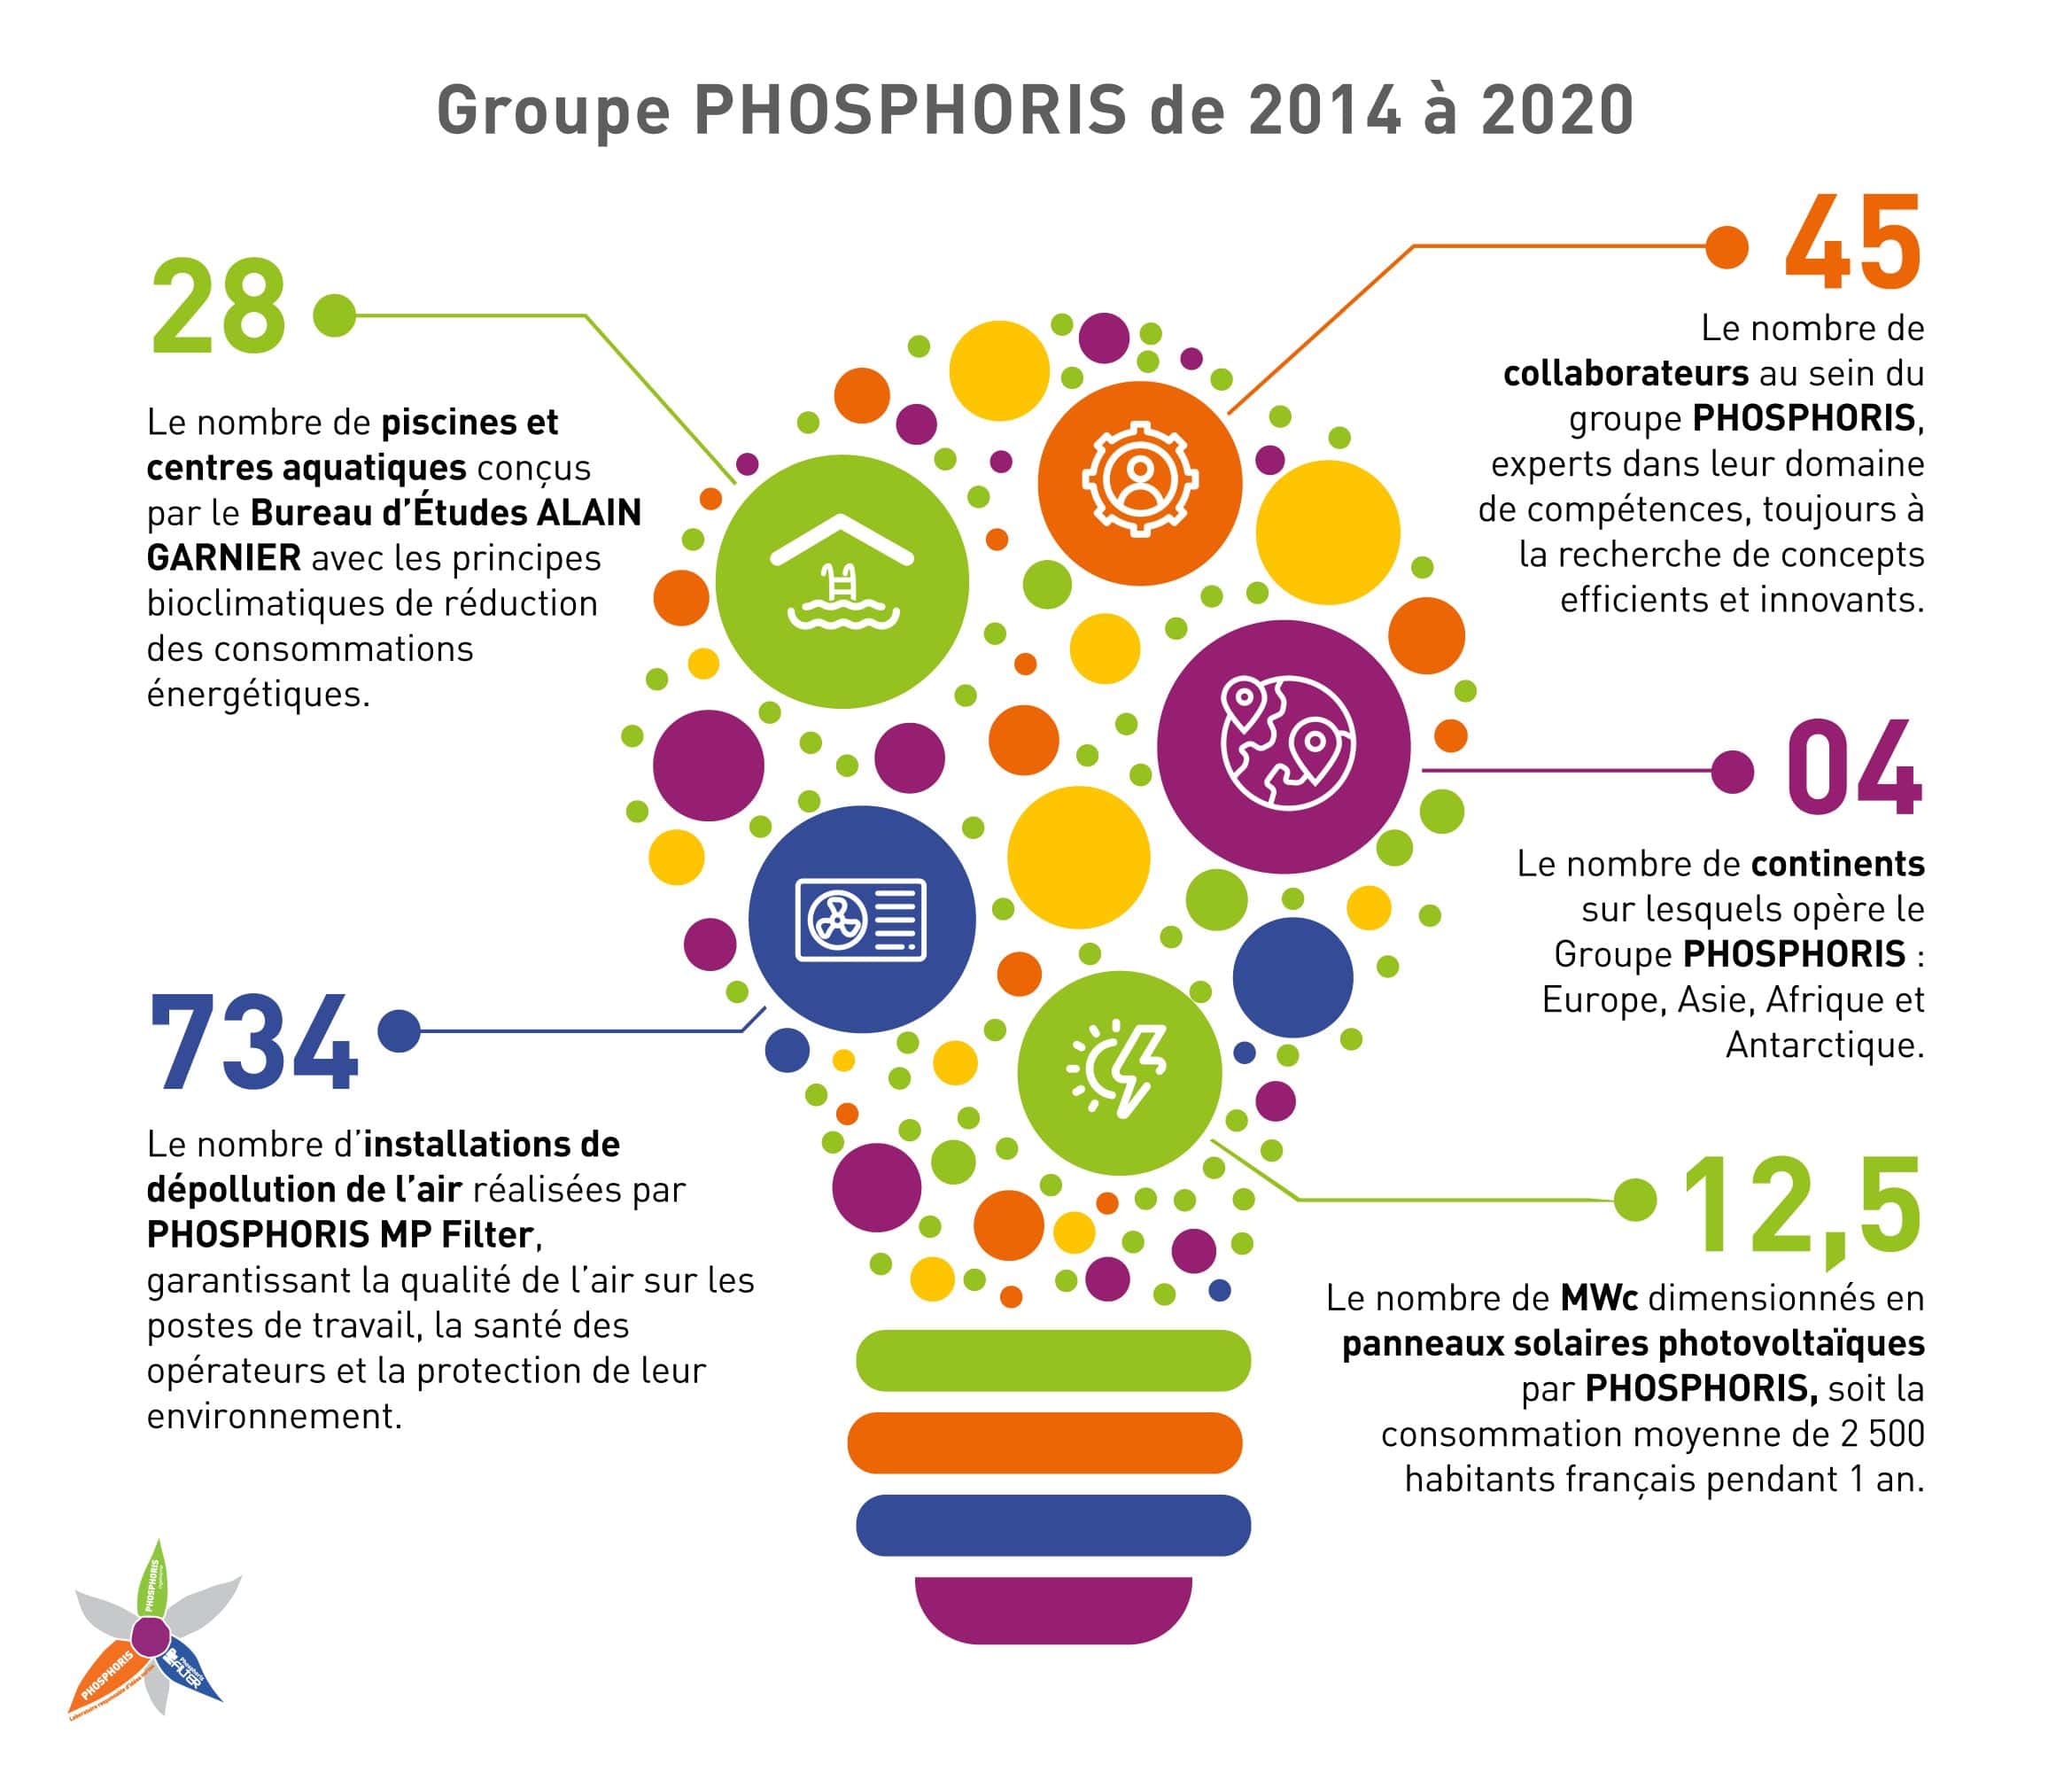 Chiffres clés du groupe PHOSPHORIS en 2020